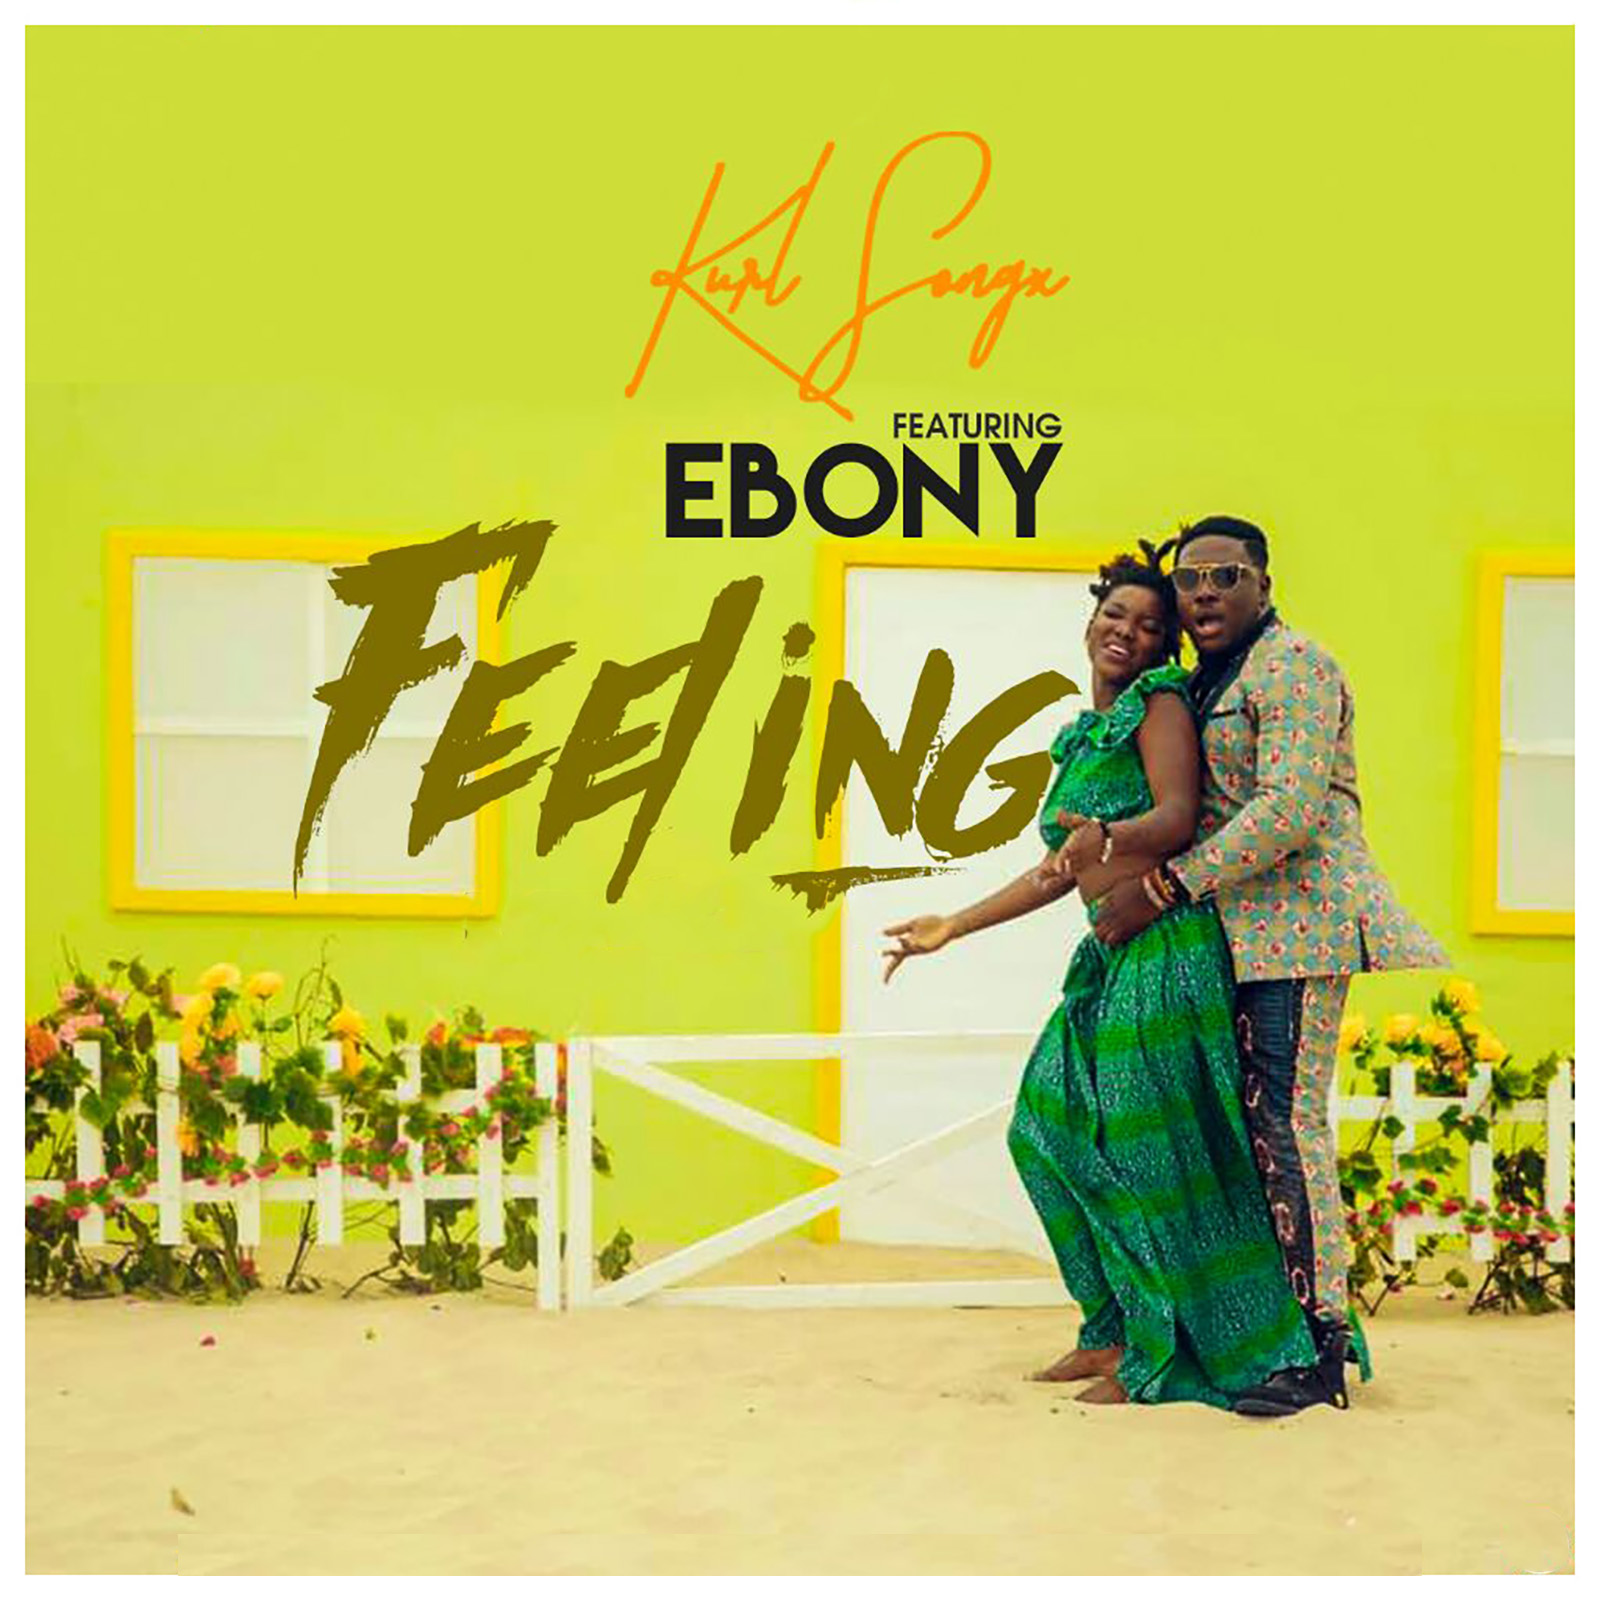 Feeling by Kurl Songx feat. Ebony